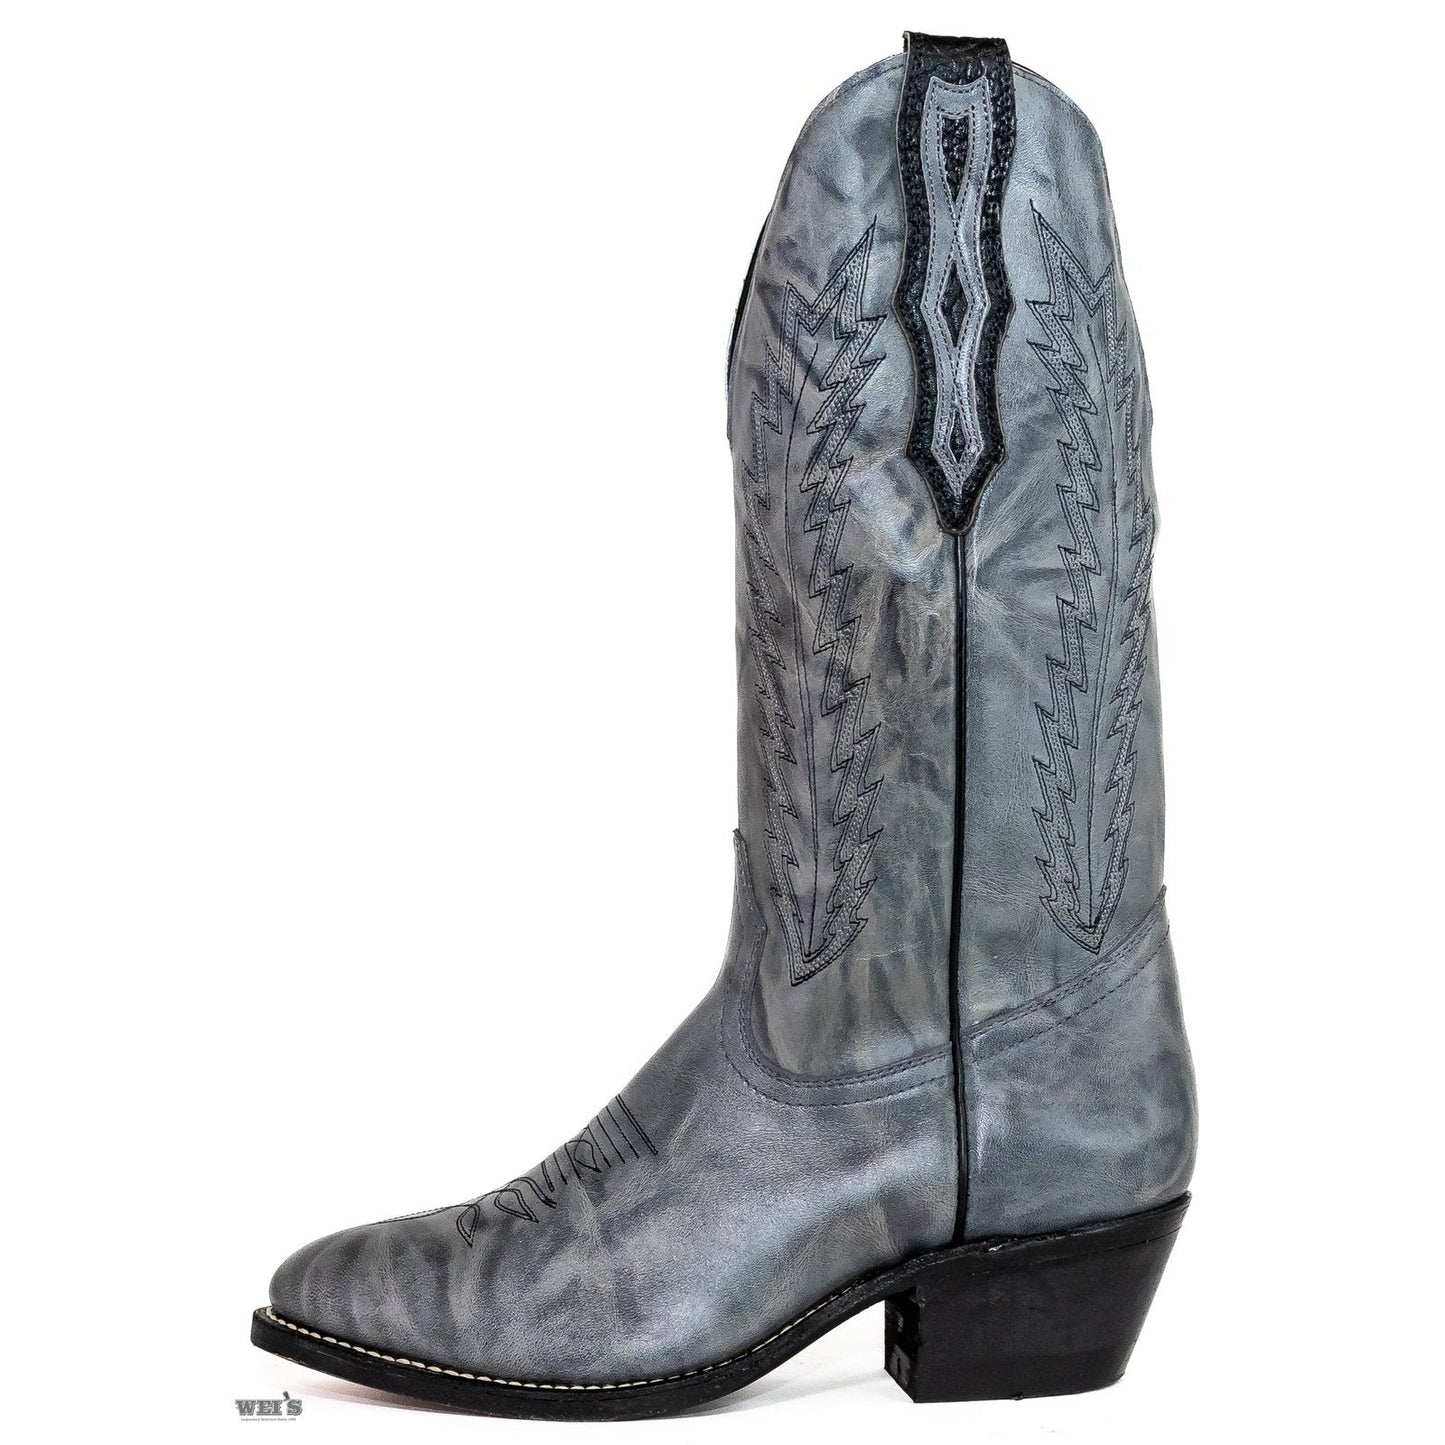 Boulet Men's Cowboy Boots 1812 - CLEARANCE - Boulet